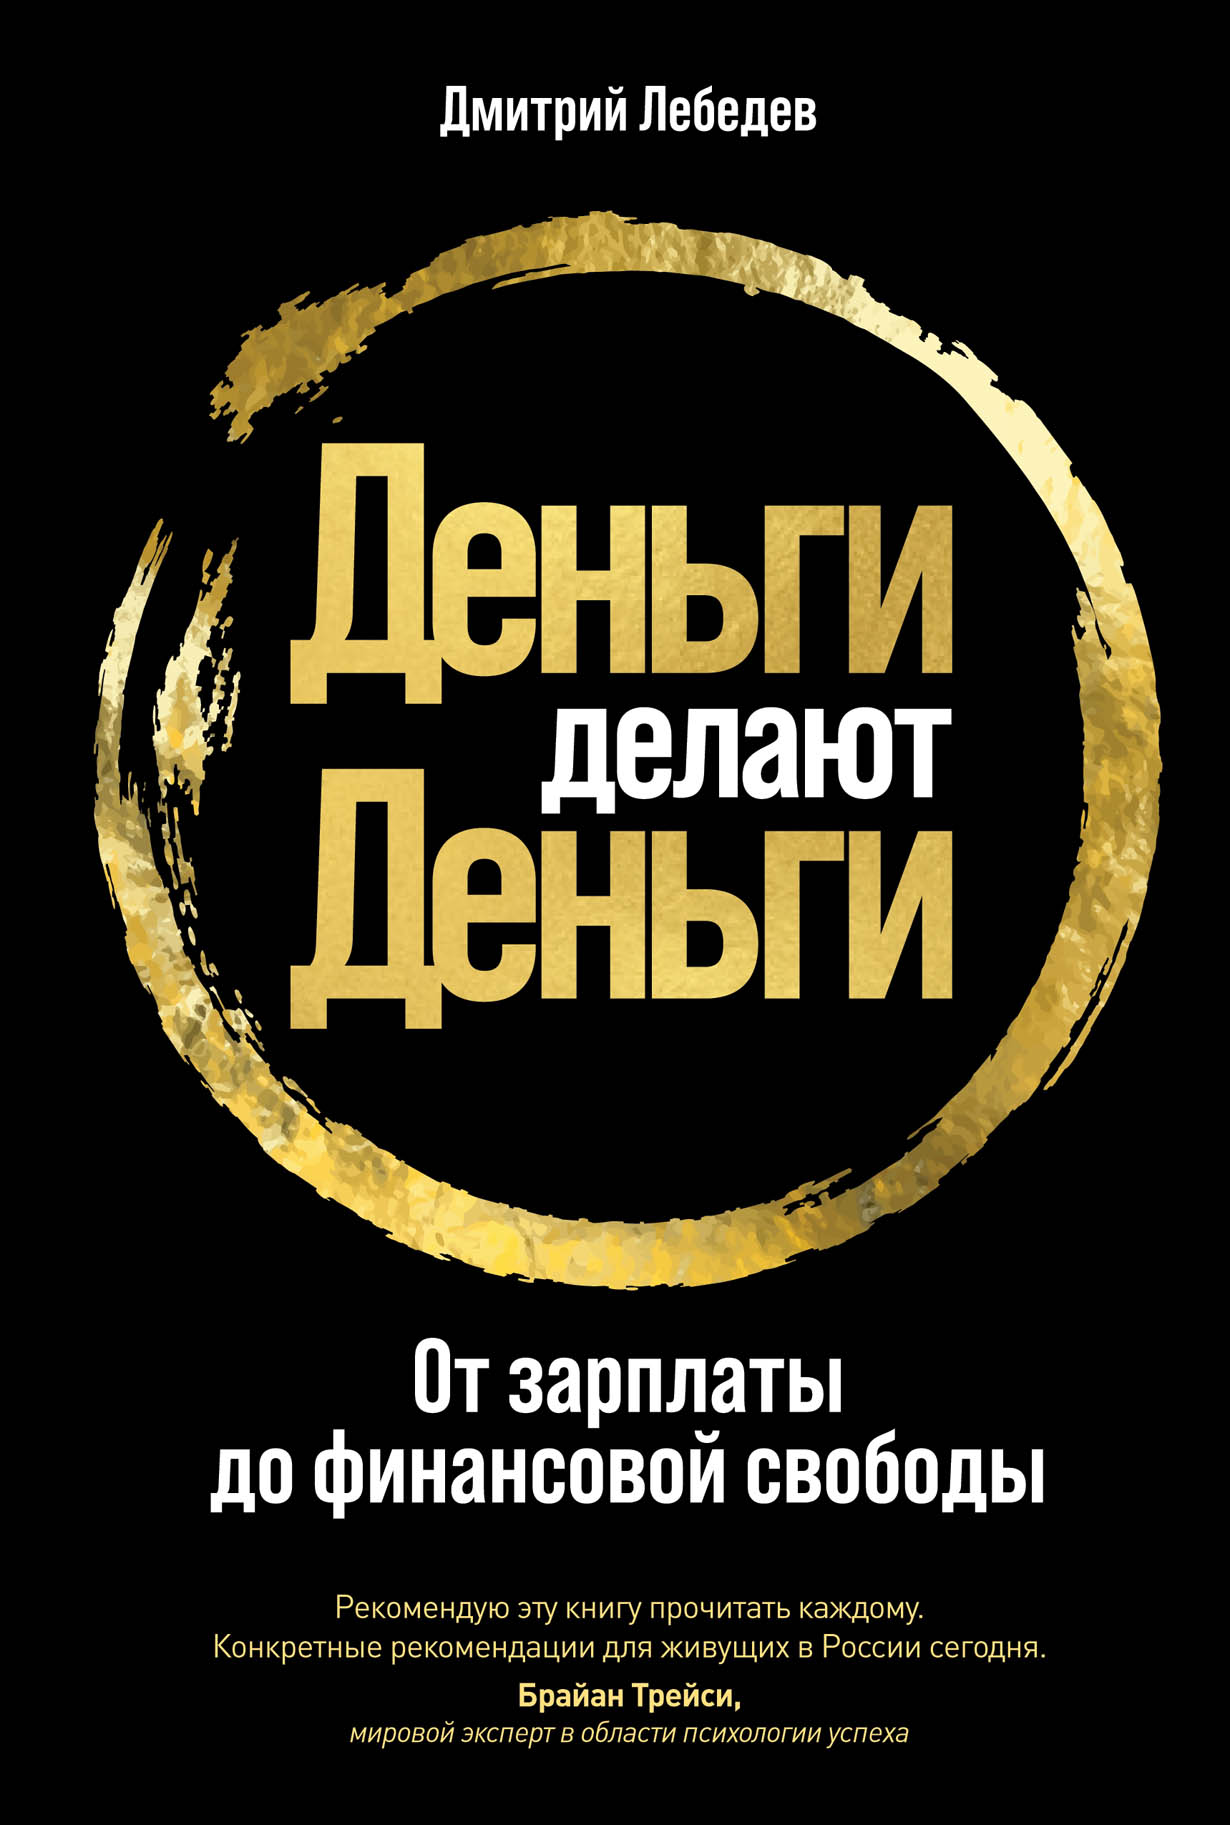 Глава 2. Права и свободы человека и гражданина | Конституция Российской Федерации